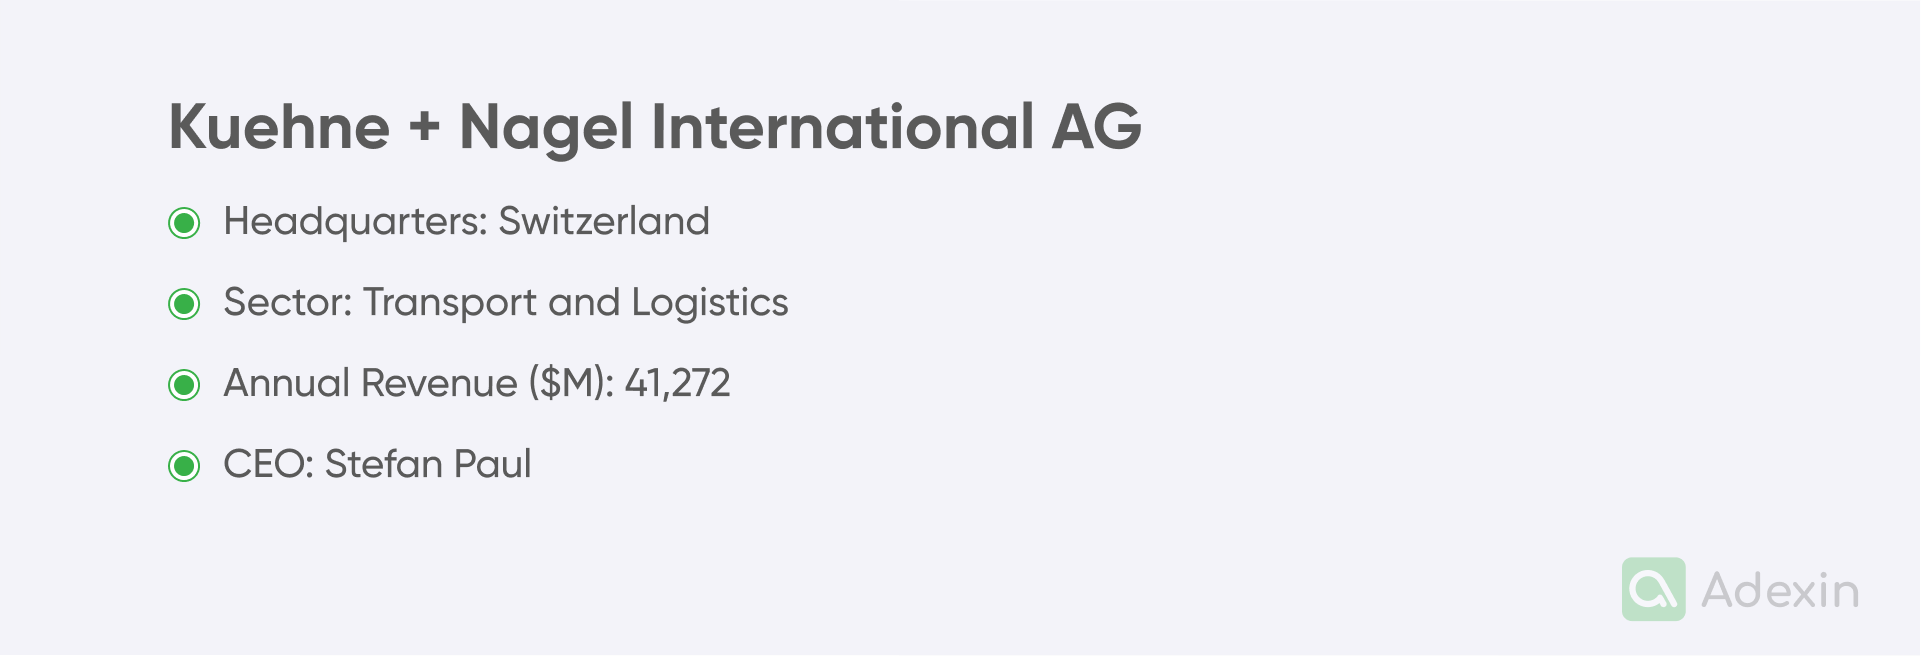 Kuehne + Nagel International AG basic data